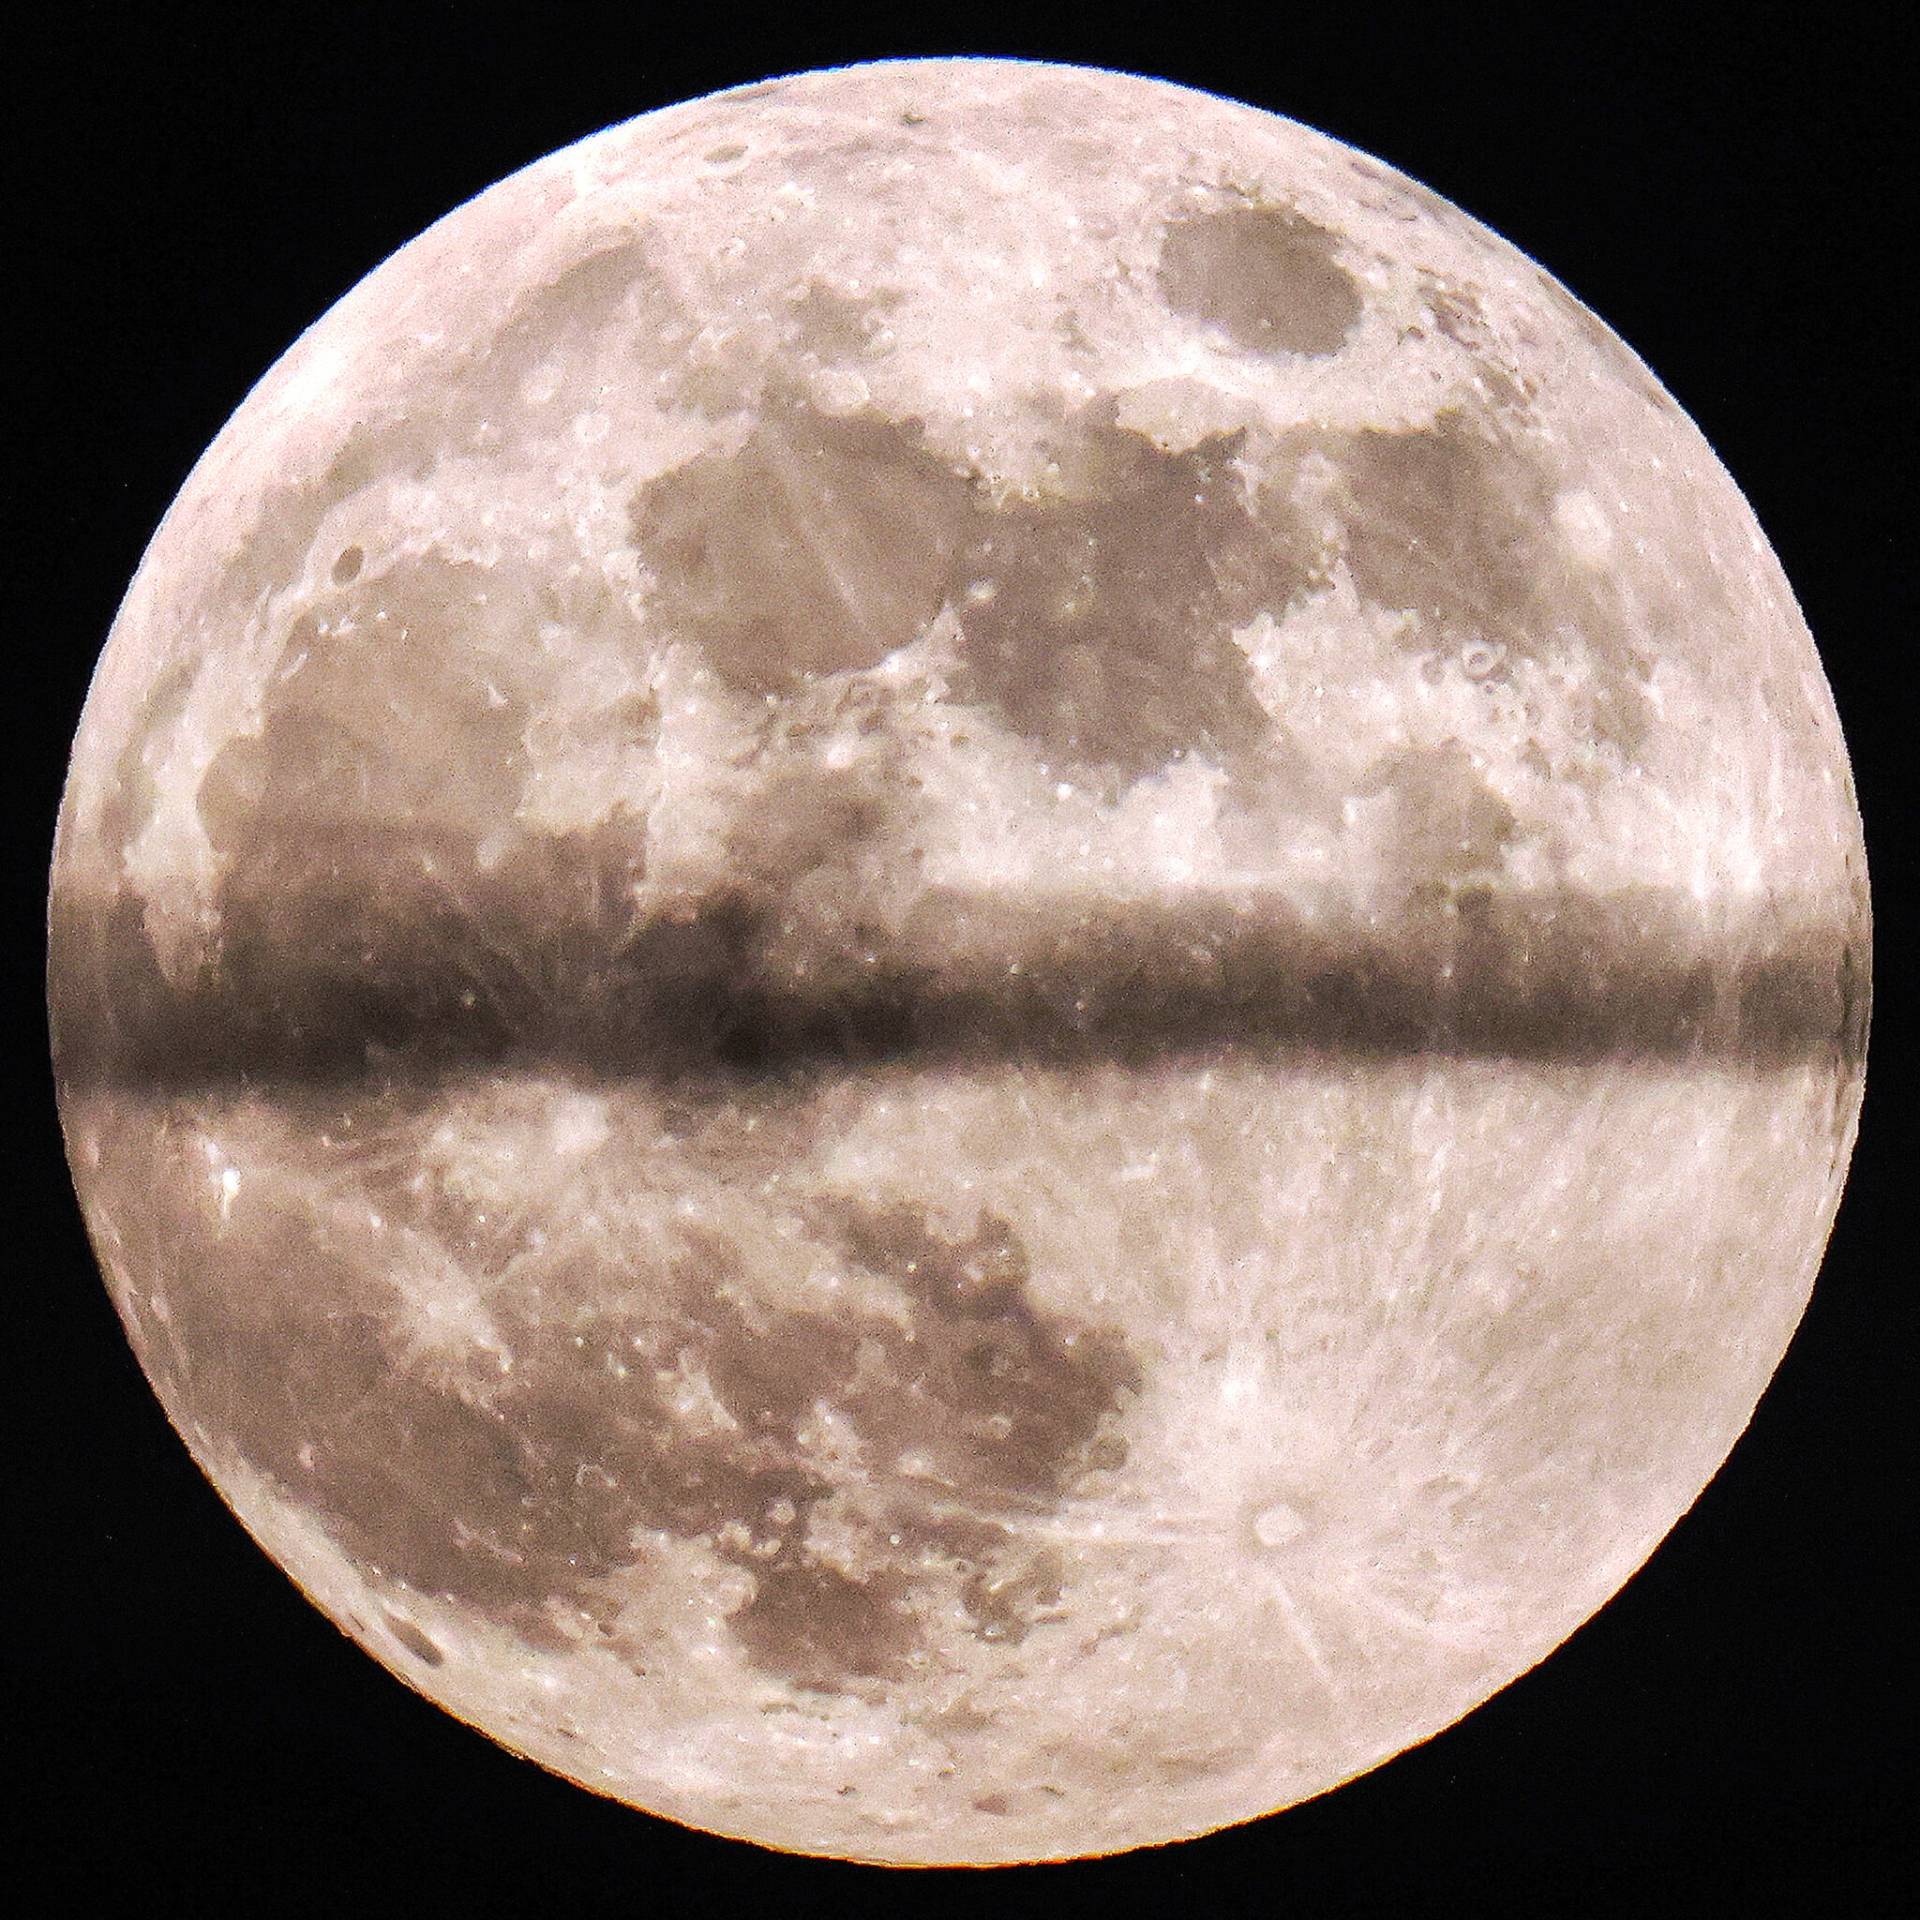 Πανσέληνος: Το «Φεγγάρι του Κυνηγού» γέμισε τον ουρανό σε όλο τον κόσμο – Μαγικές εικόνες